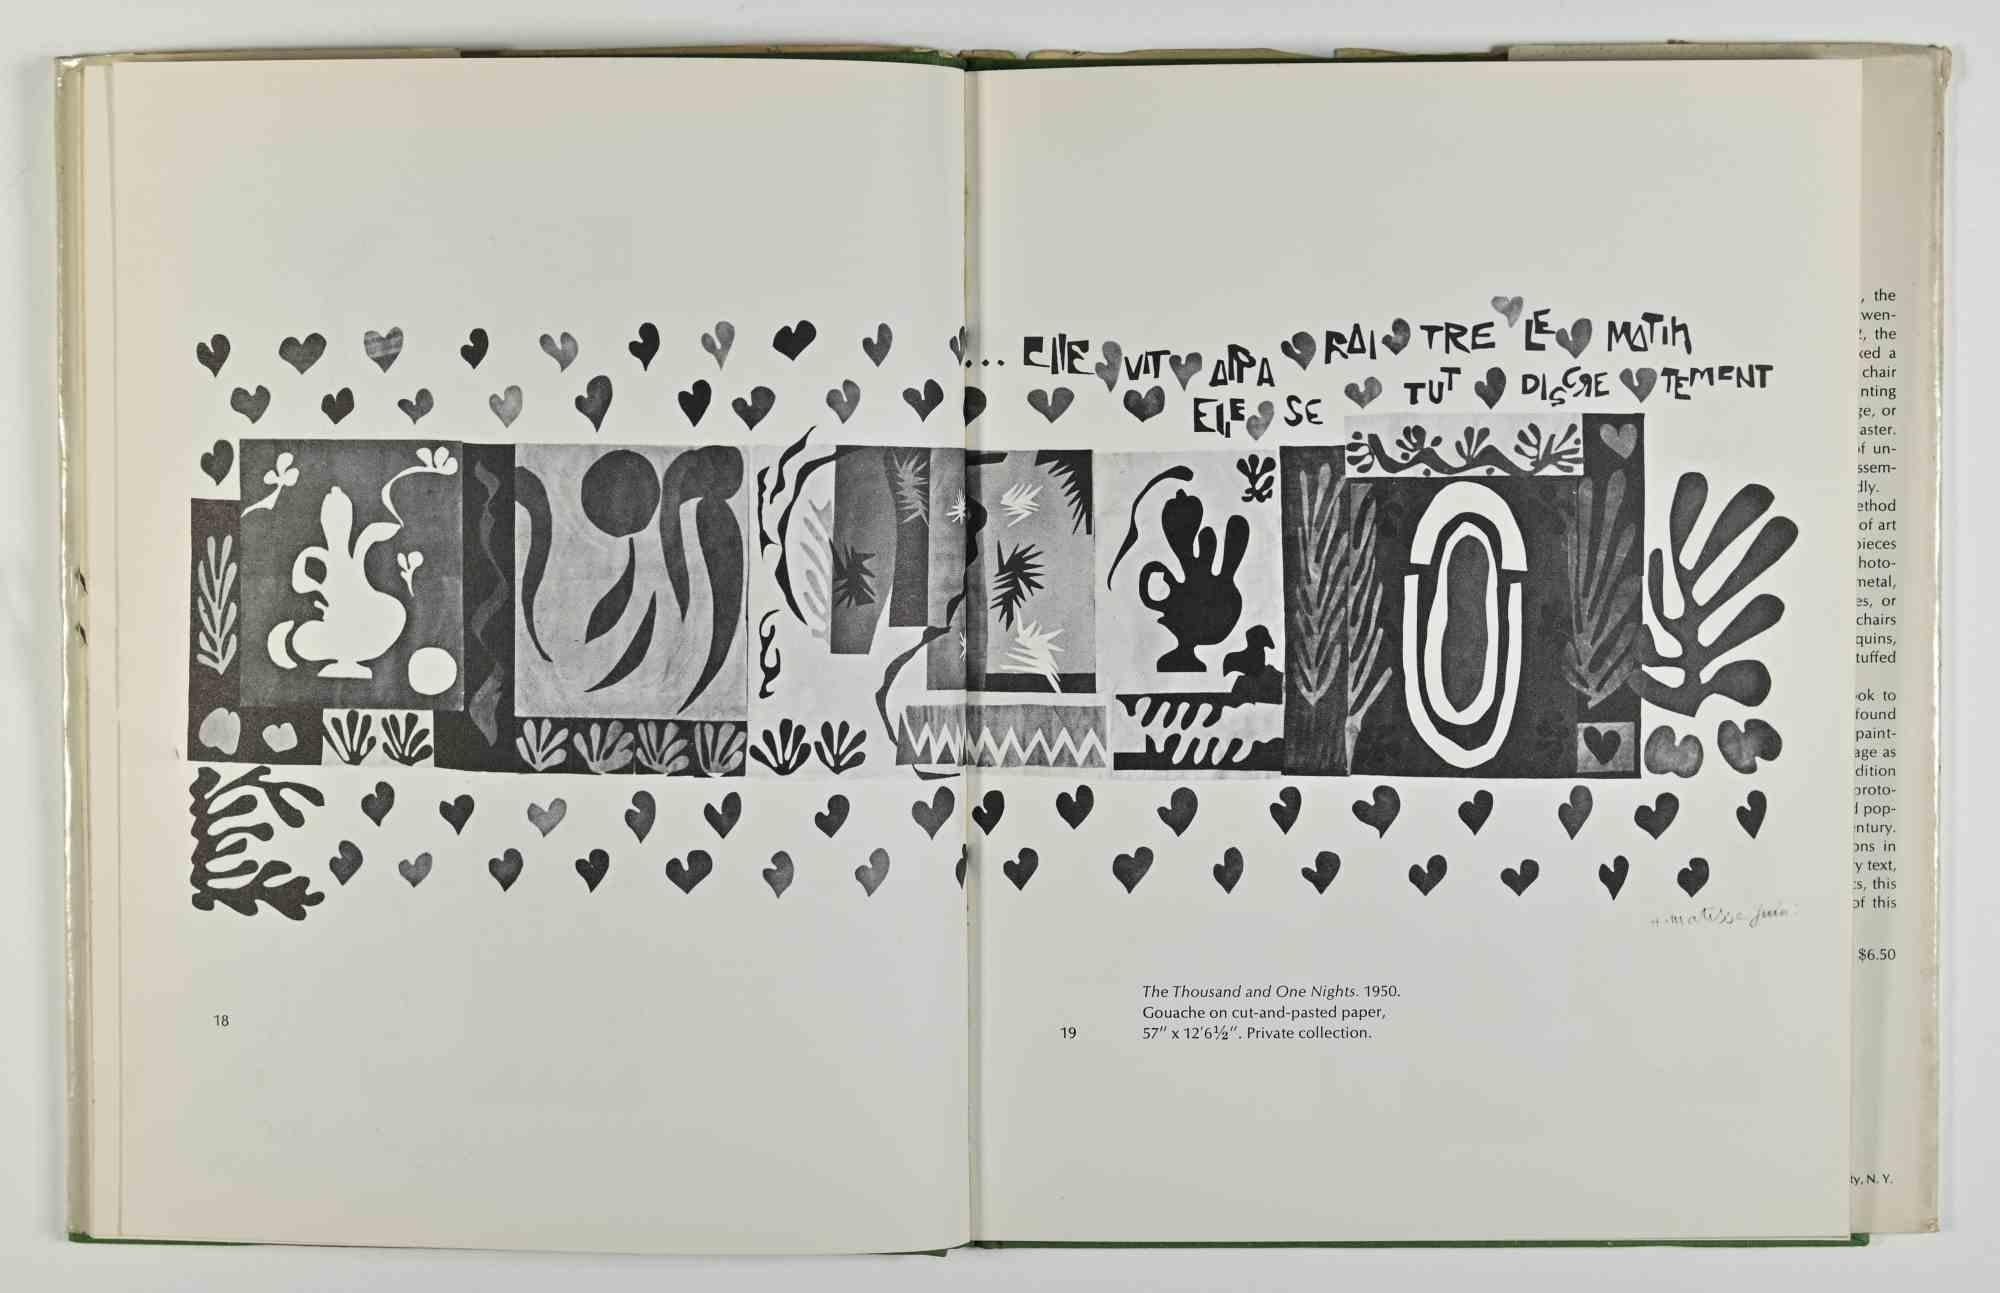 Les dernières œuvres d'Henri Matisse est un catalogue de l'artiste réalisé par la recherche de Monroe Wheeler. 

64 pages, 44 planches ( 13 en couleur). 

Distribué par Doubleday & Co, Inc. Garden City, New York.  

Bonnes conditions. 